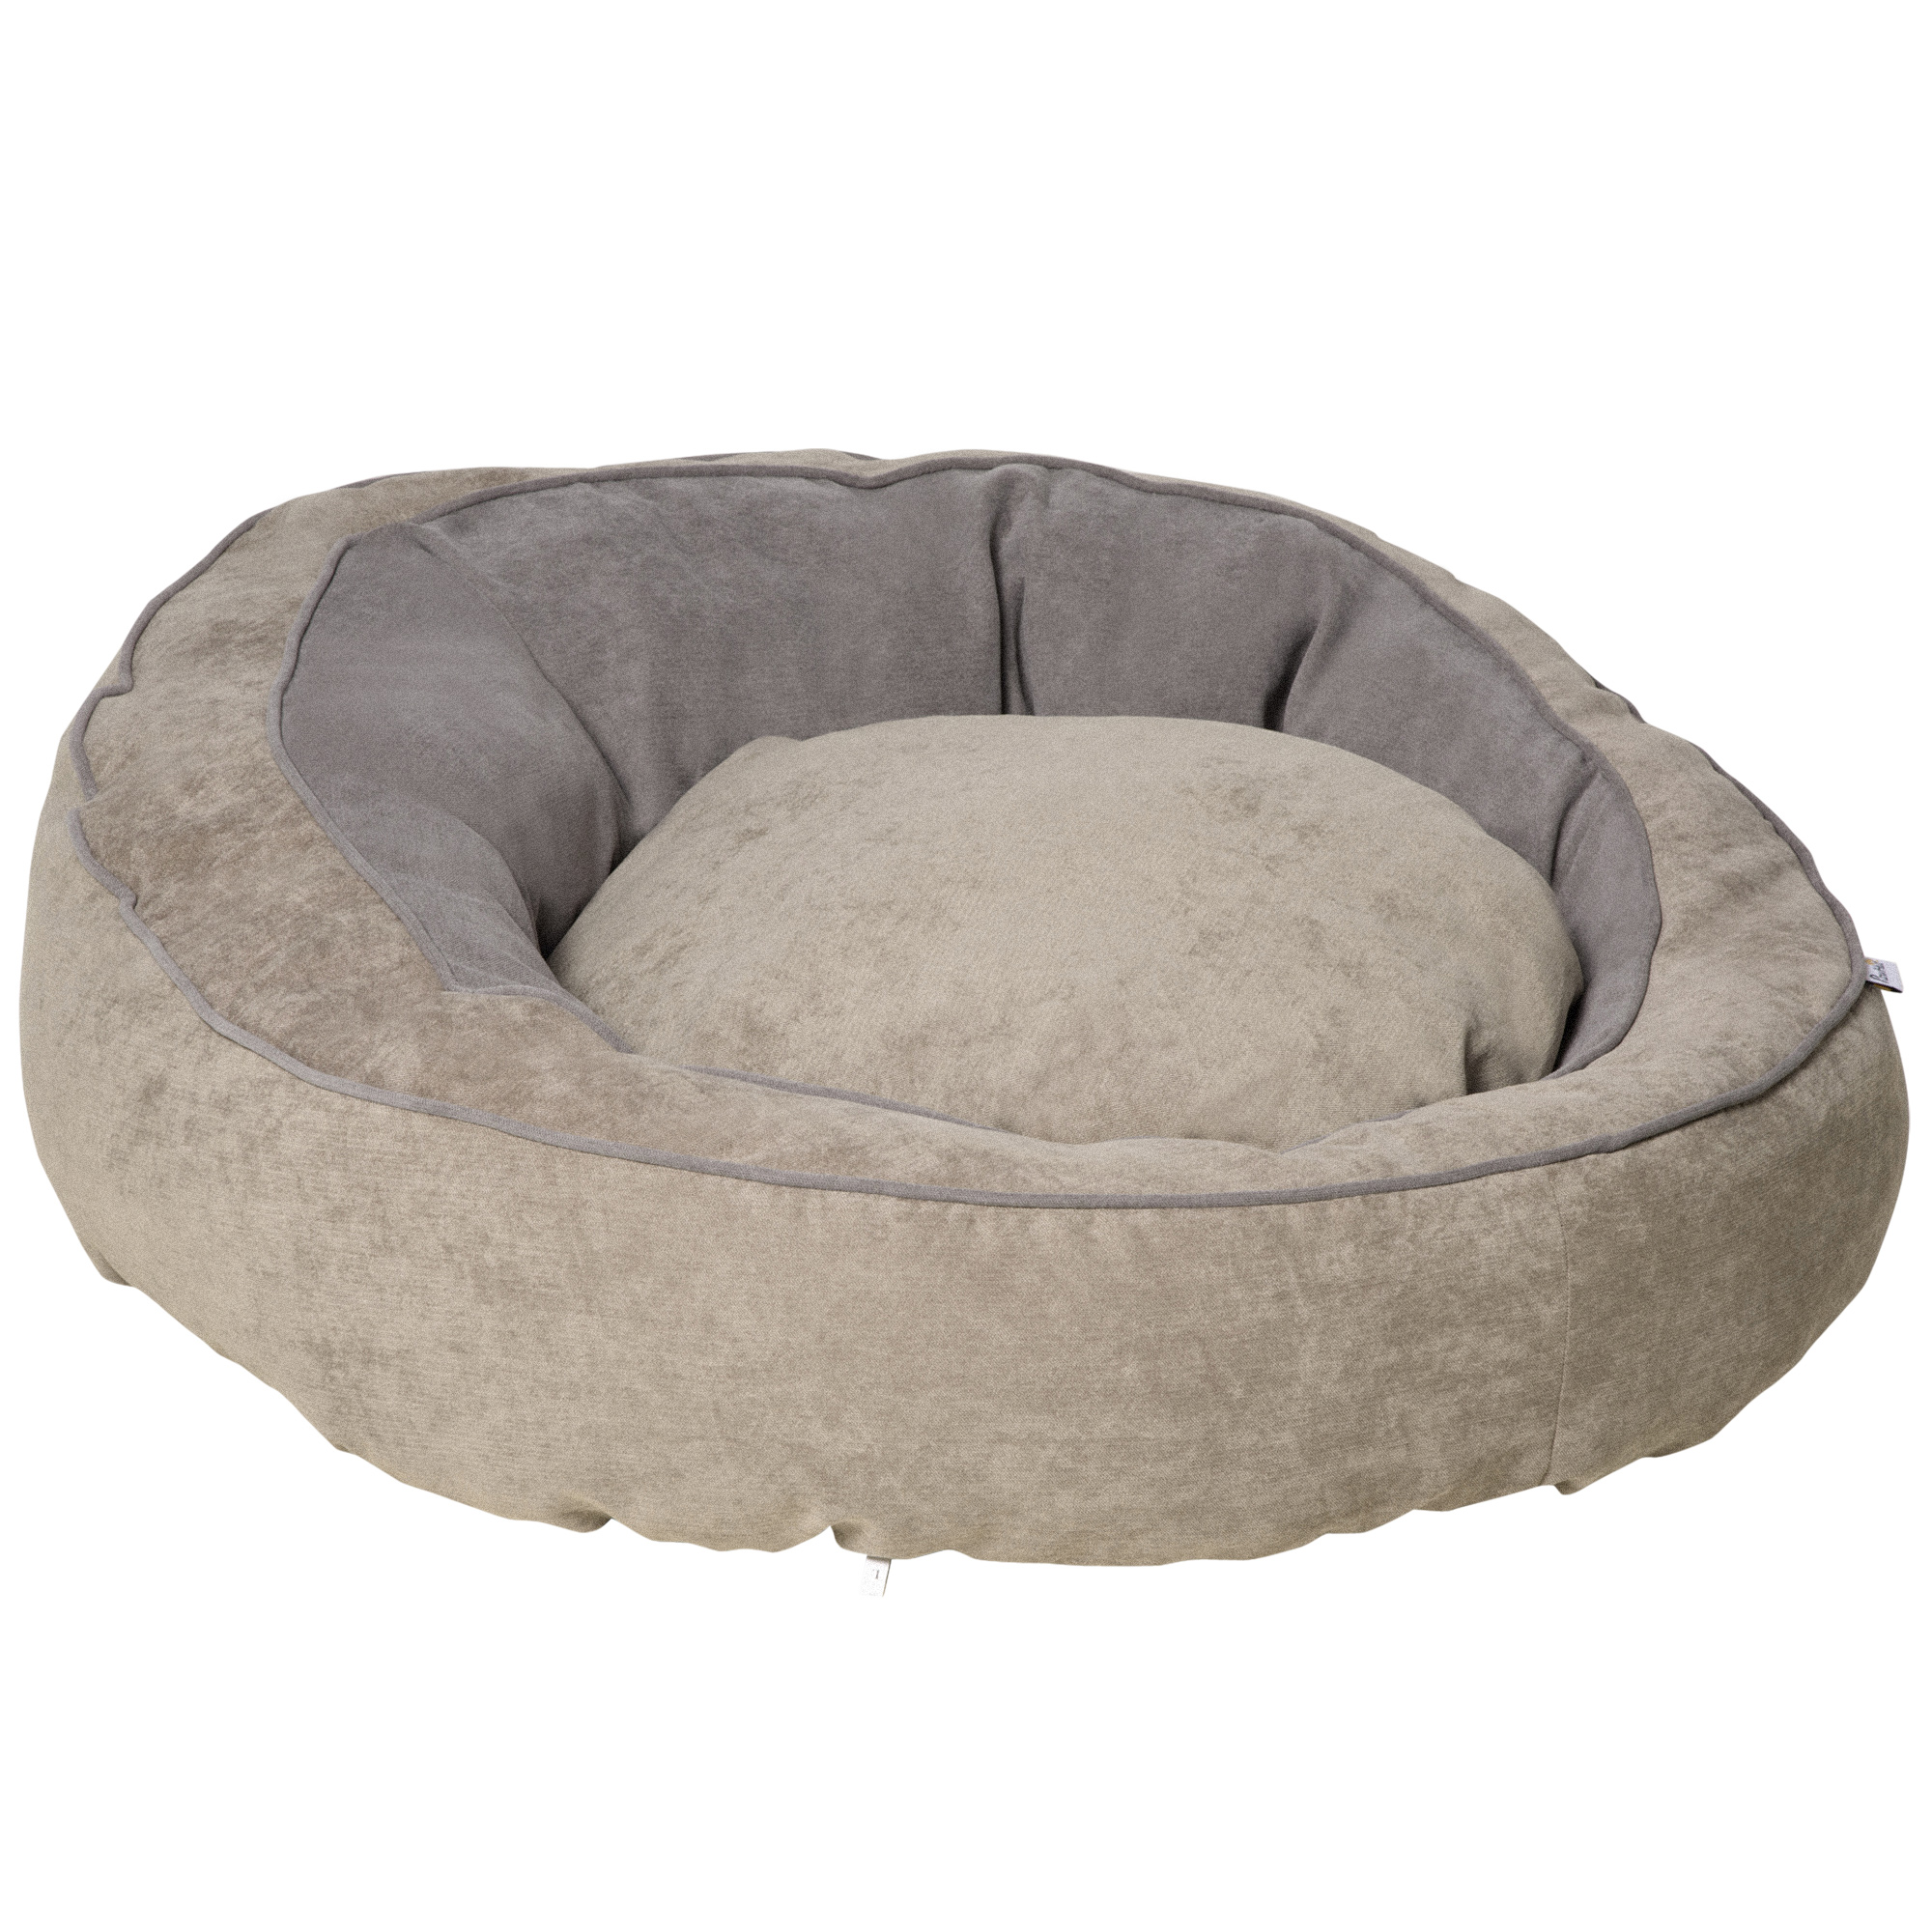 Κρεβάτι PawHut με επένδυση για σκύλους και γάτες με μαξιλάρι και υπερυψωμένες άκρες